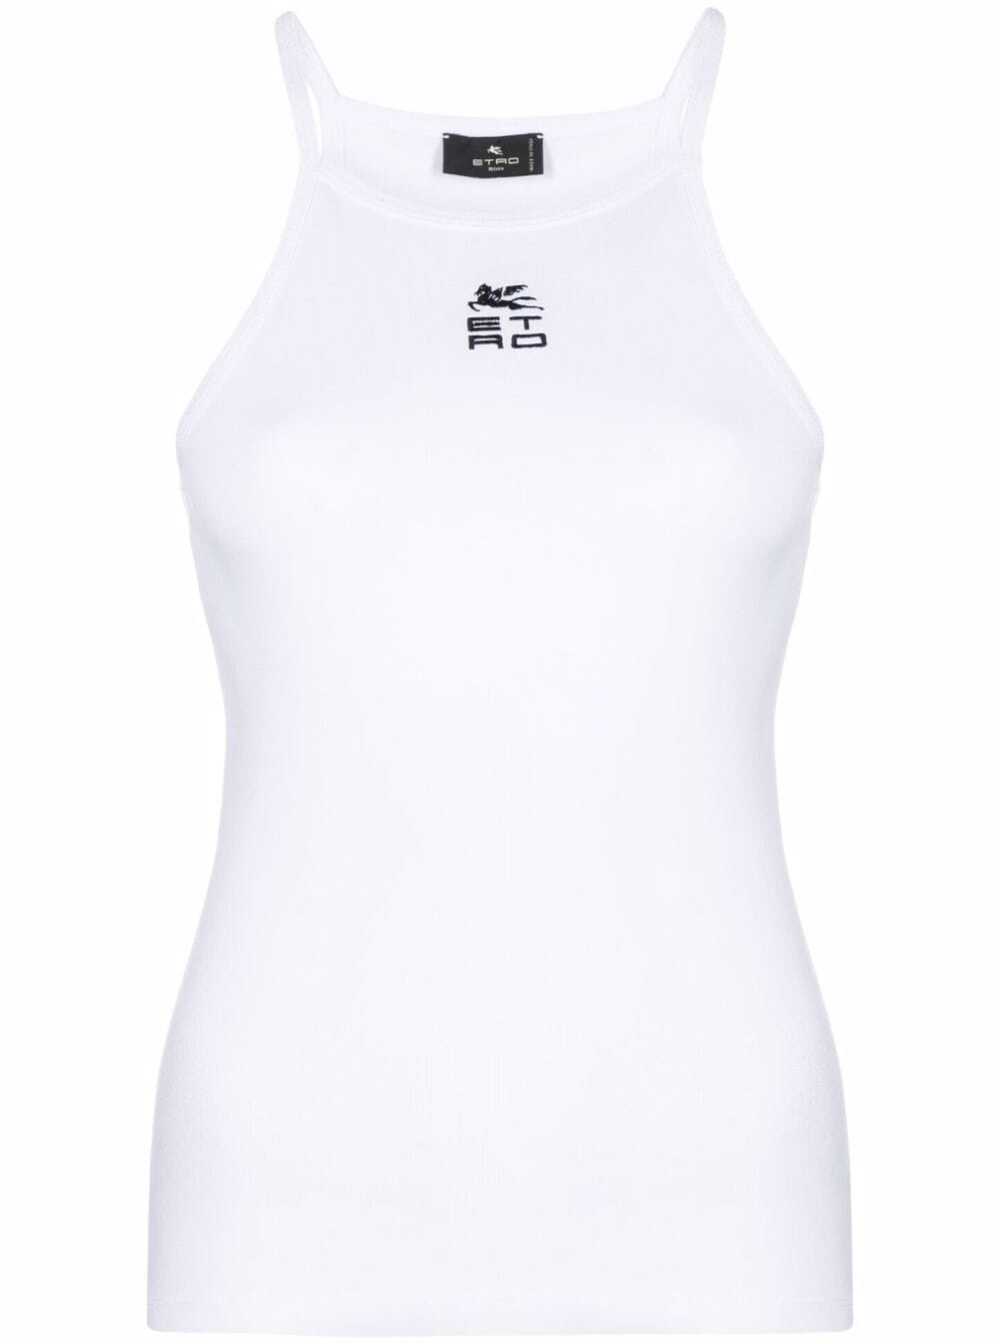 Etro Womans White Cotton Tank Top With Logo